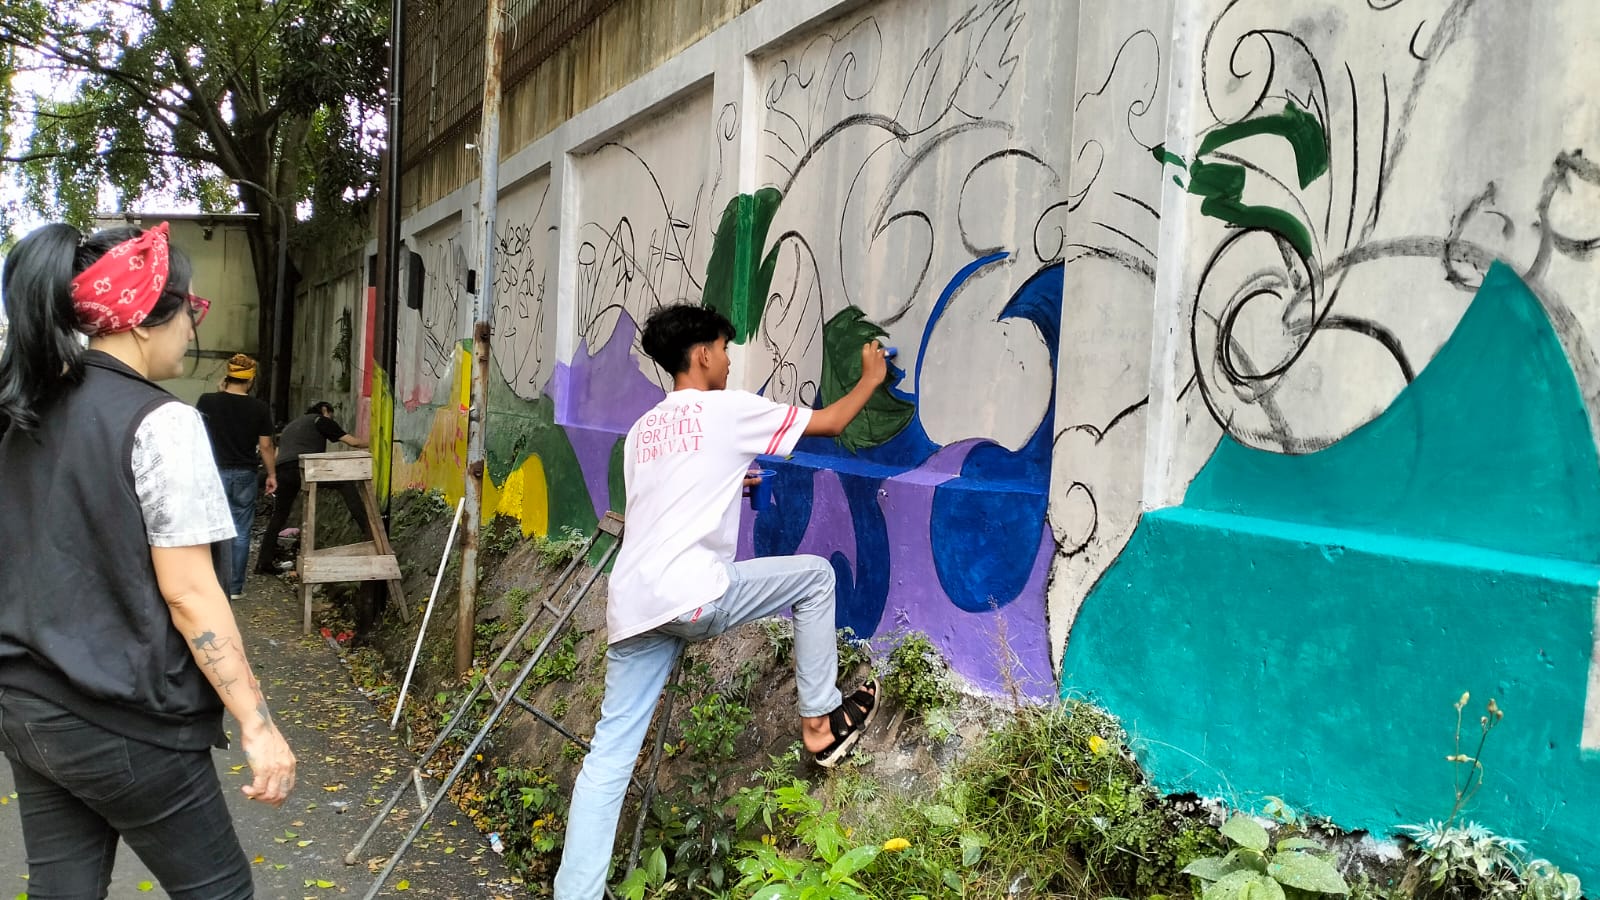 Pelatihan Usaha Mikro, Kecil, dan Menengah (UMKM) dan pelatihan menggambar graffiti oleh warga.